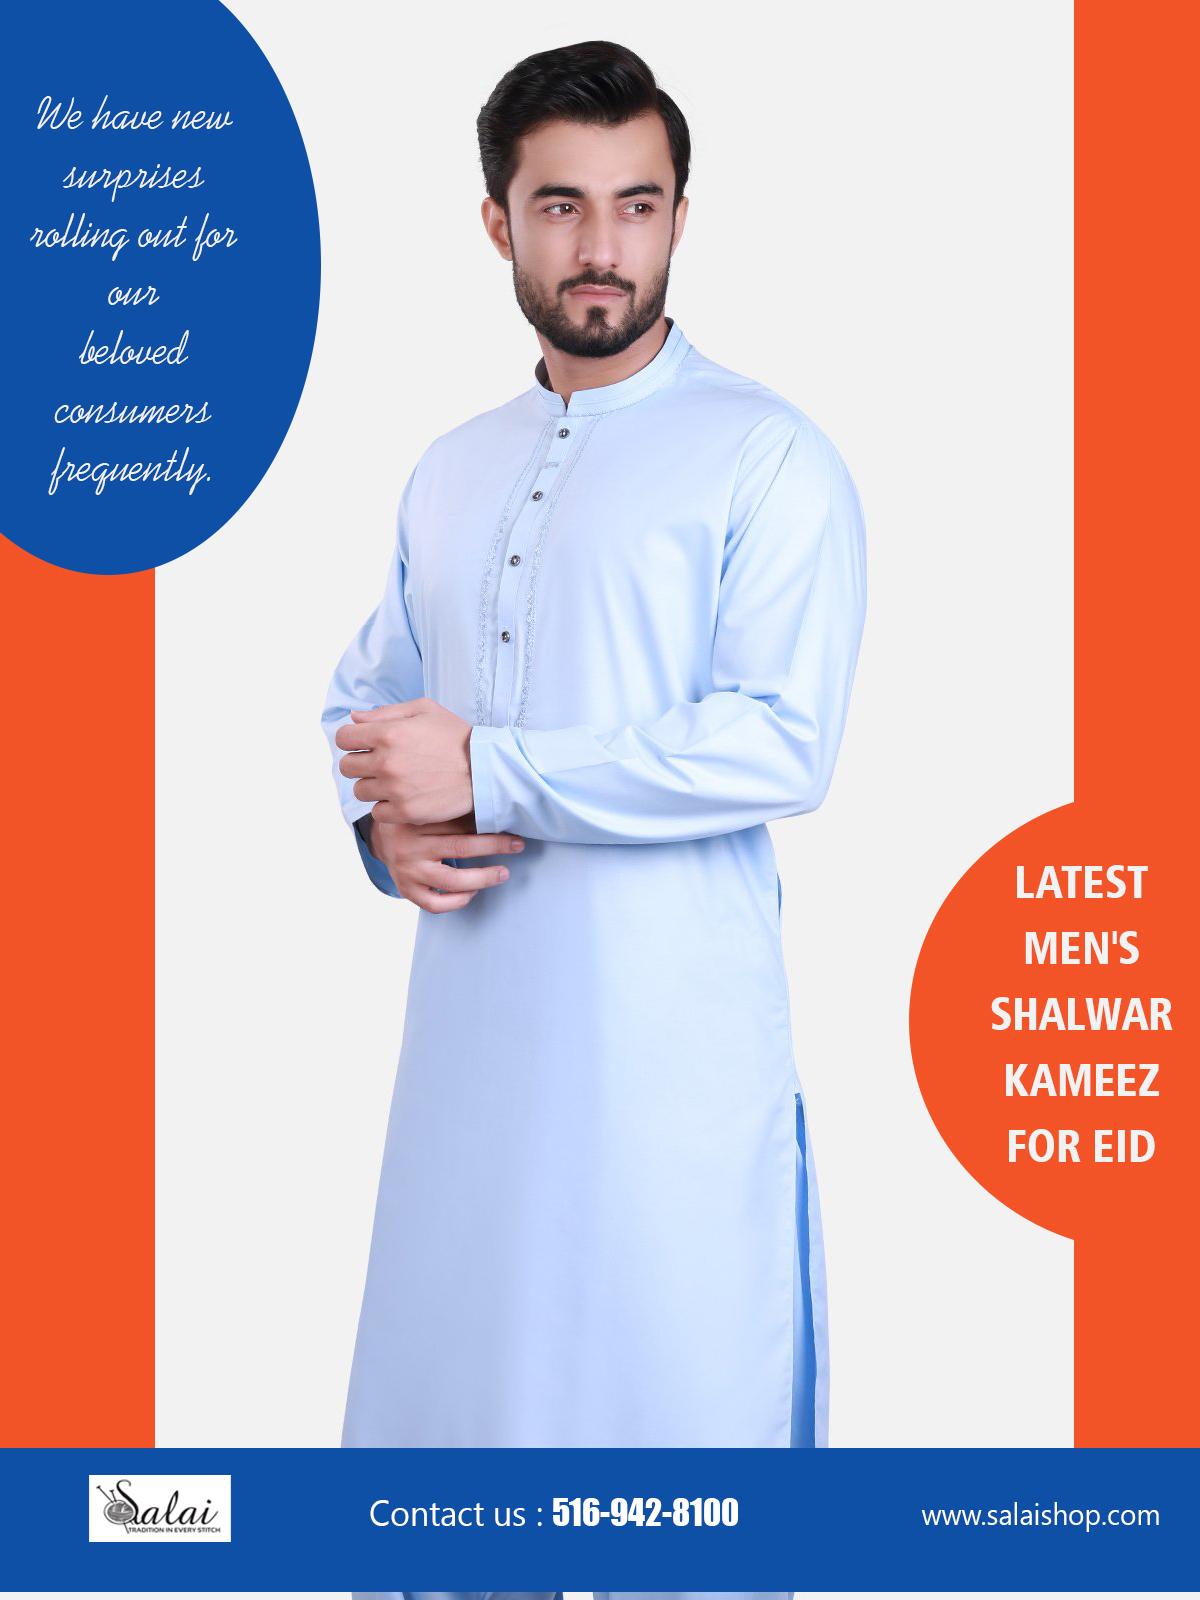 Latest Men's Shalwar kameez for Eid (2)